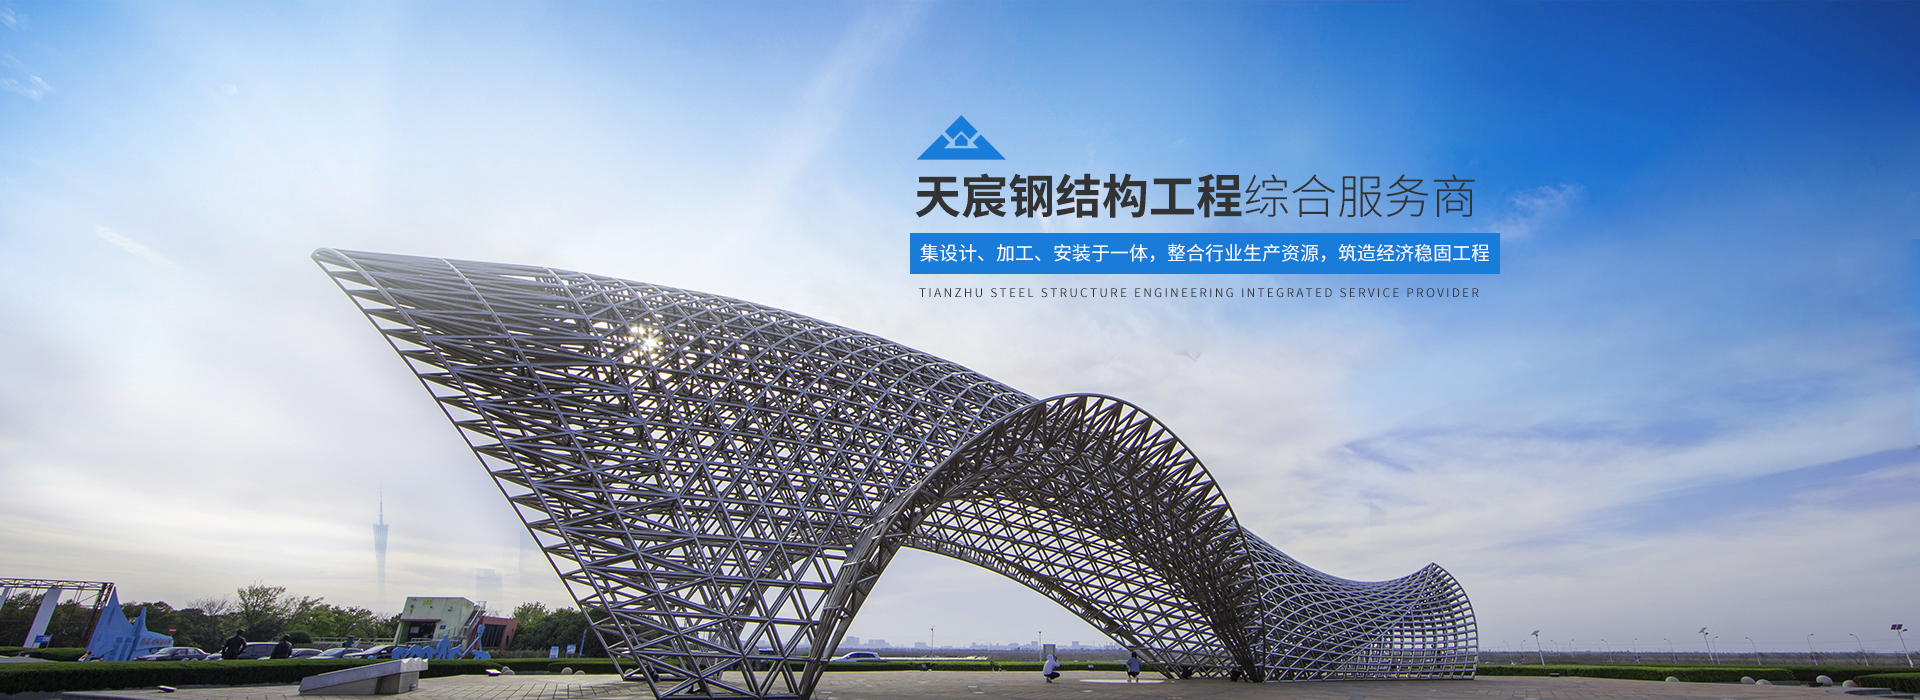 广东钢结构工程